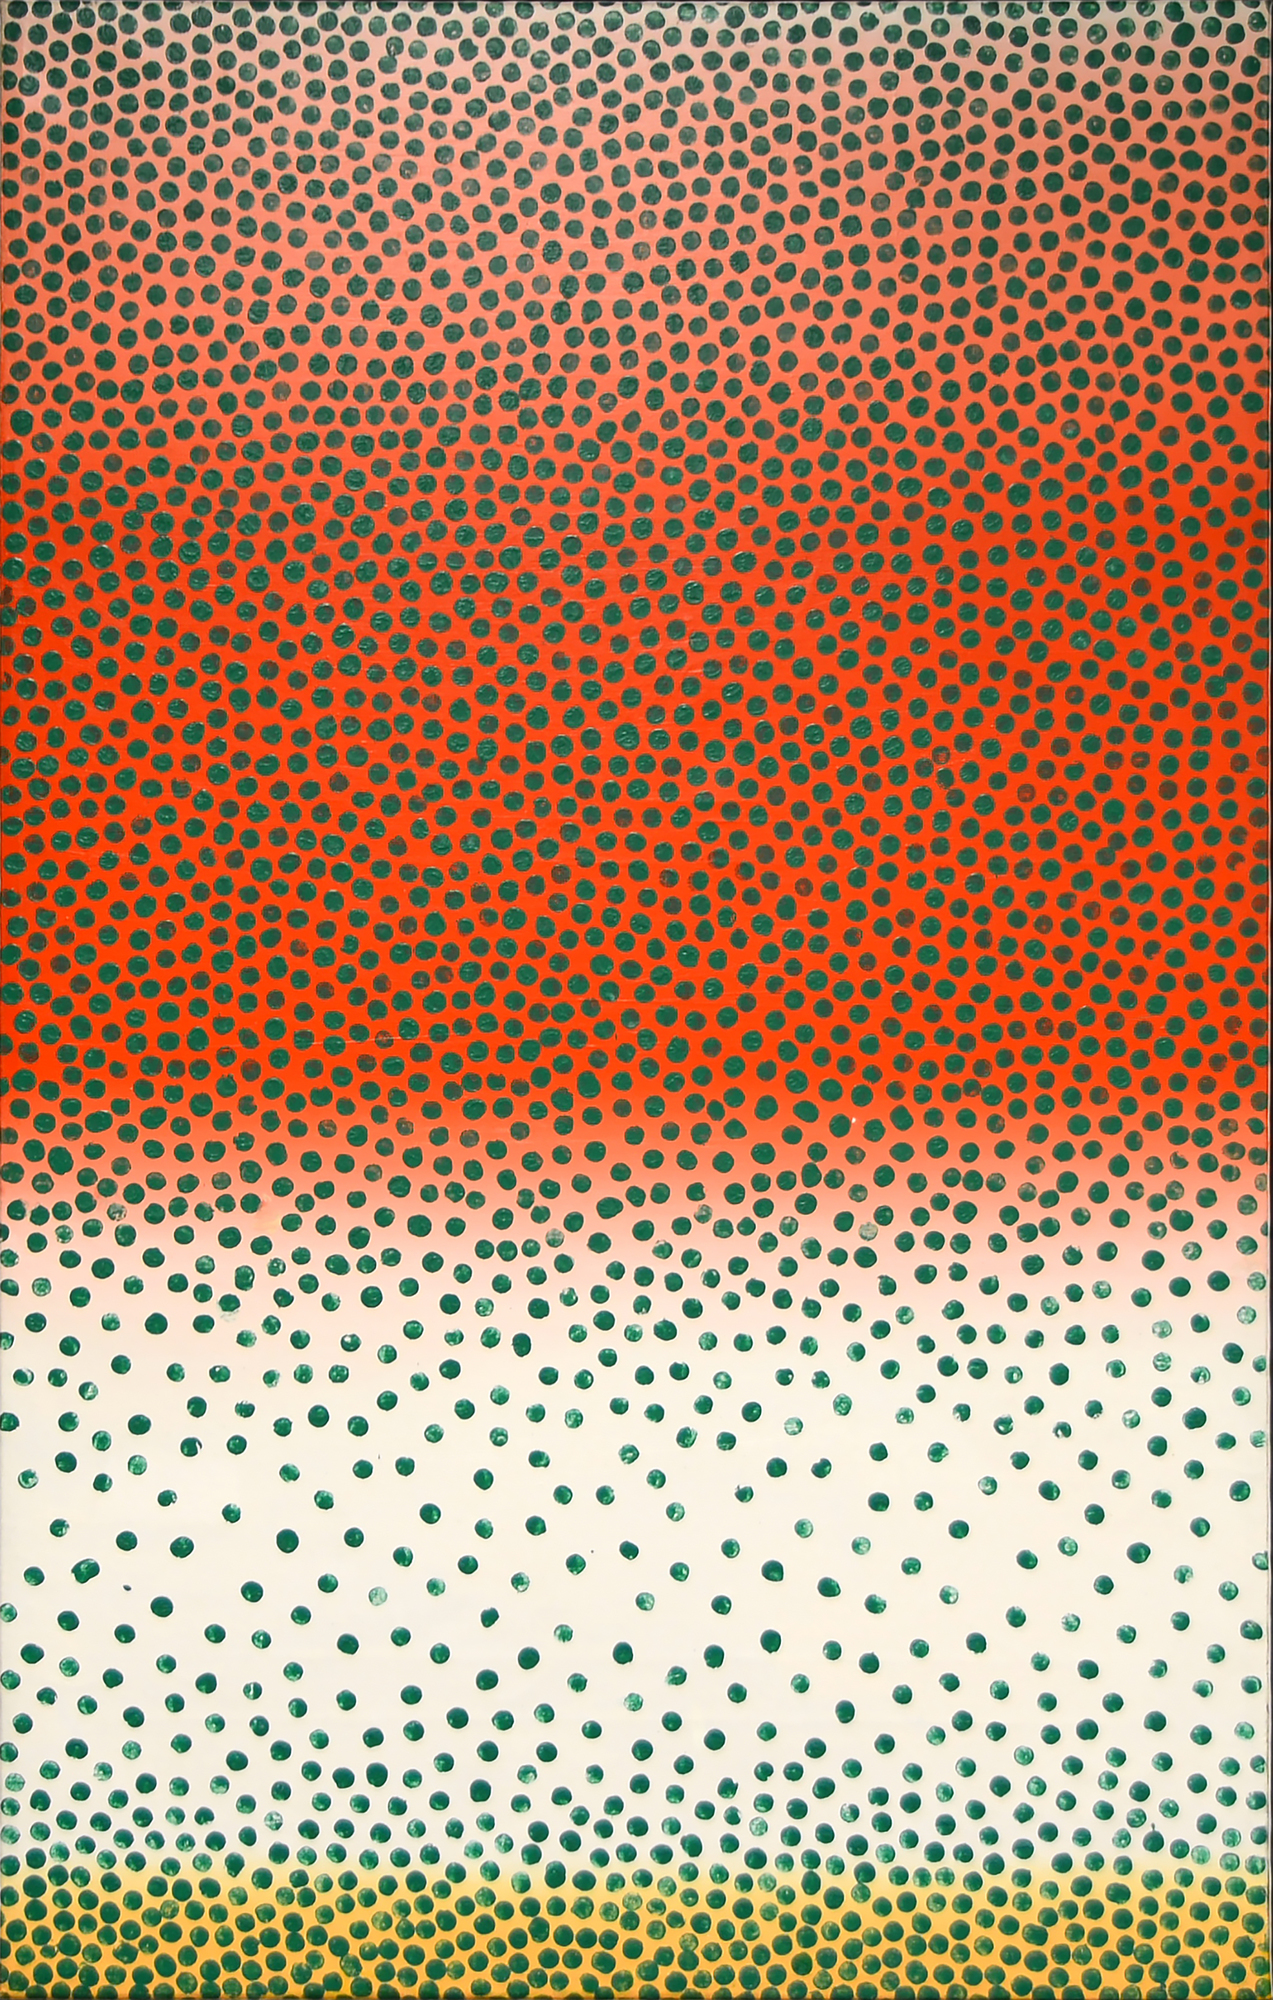 WOJCIECH FANGOR - Green Points - oil on canvas - 52 7/8 x 33 1/2 in.